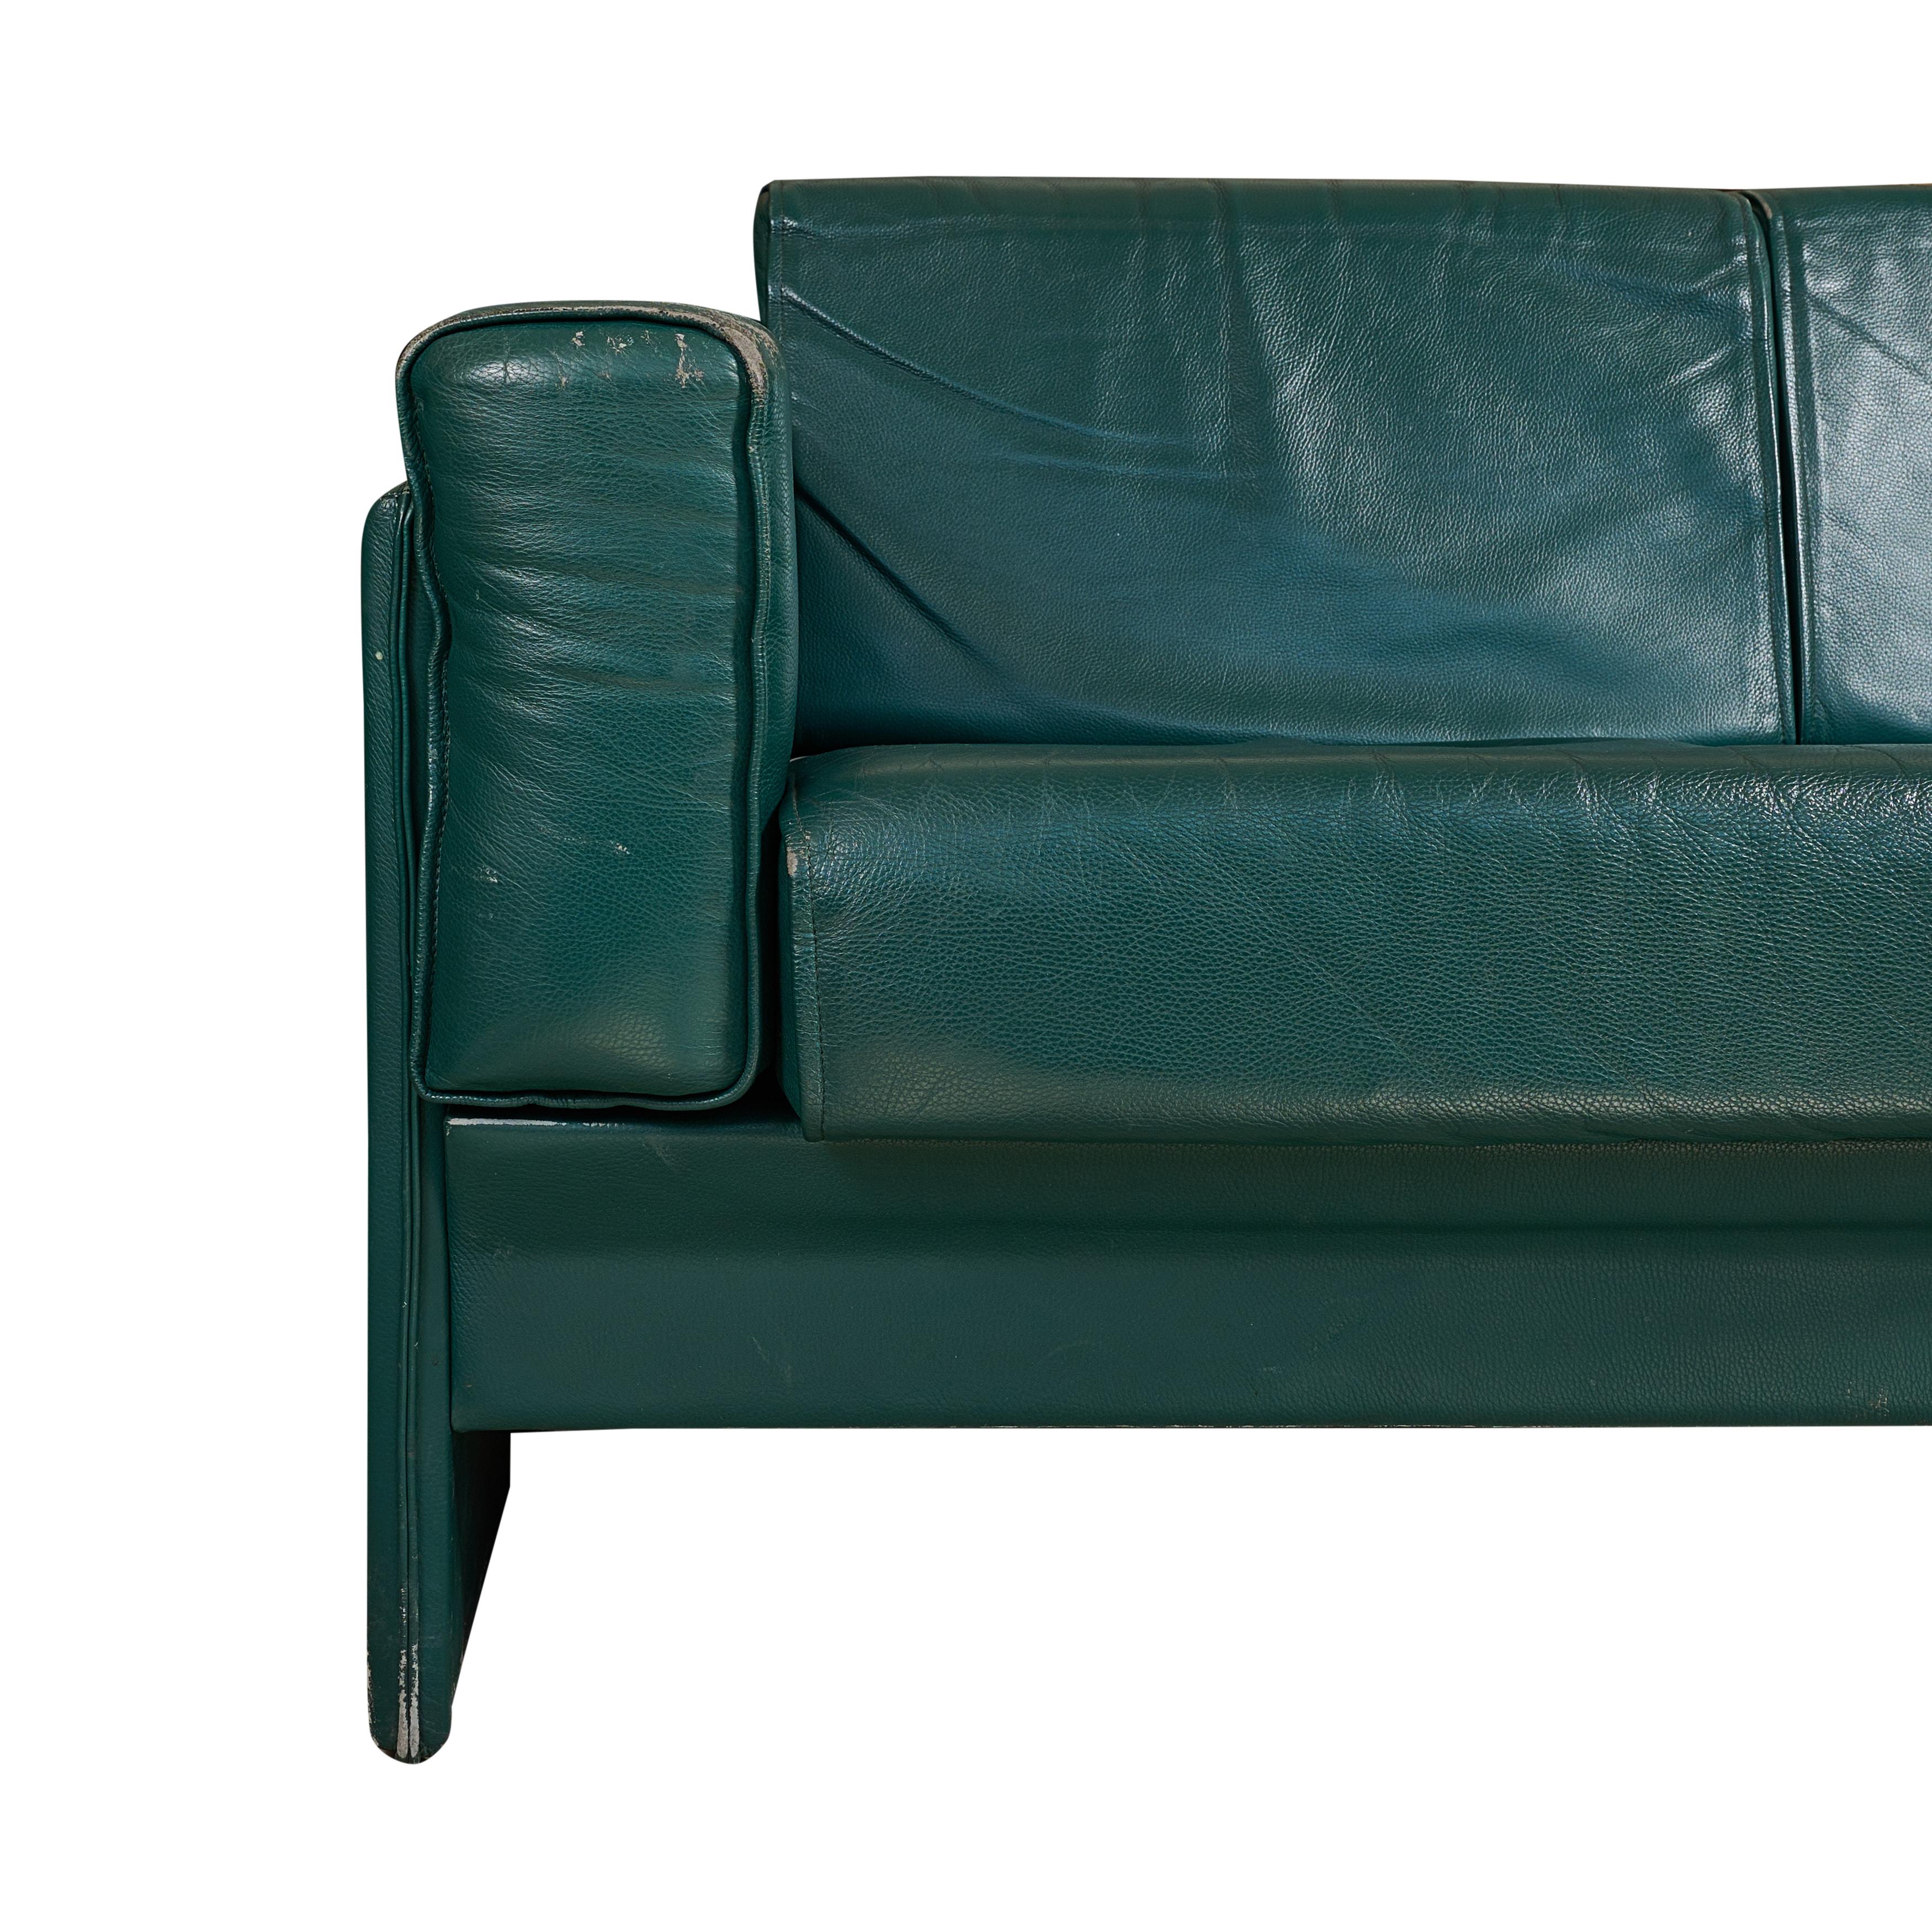 Zweisitziges Sofa aus grünem Leder aus der Mitte des Jahrhunderts von einem Mailänder Flughafen.